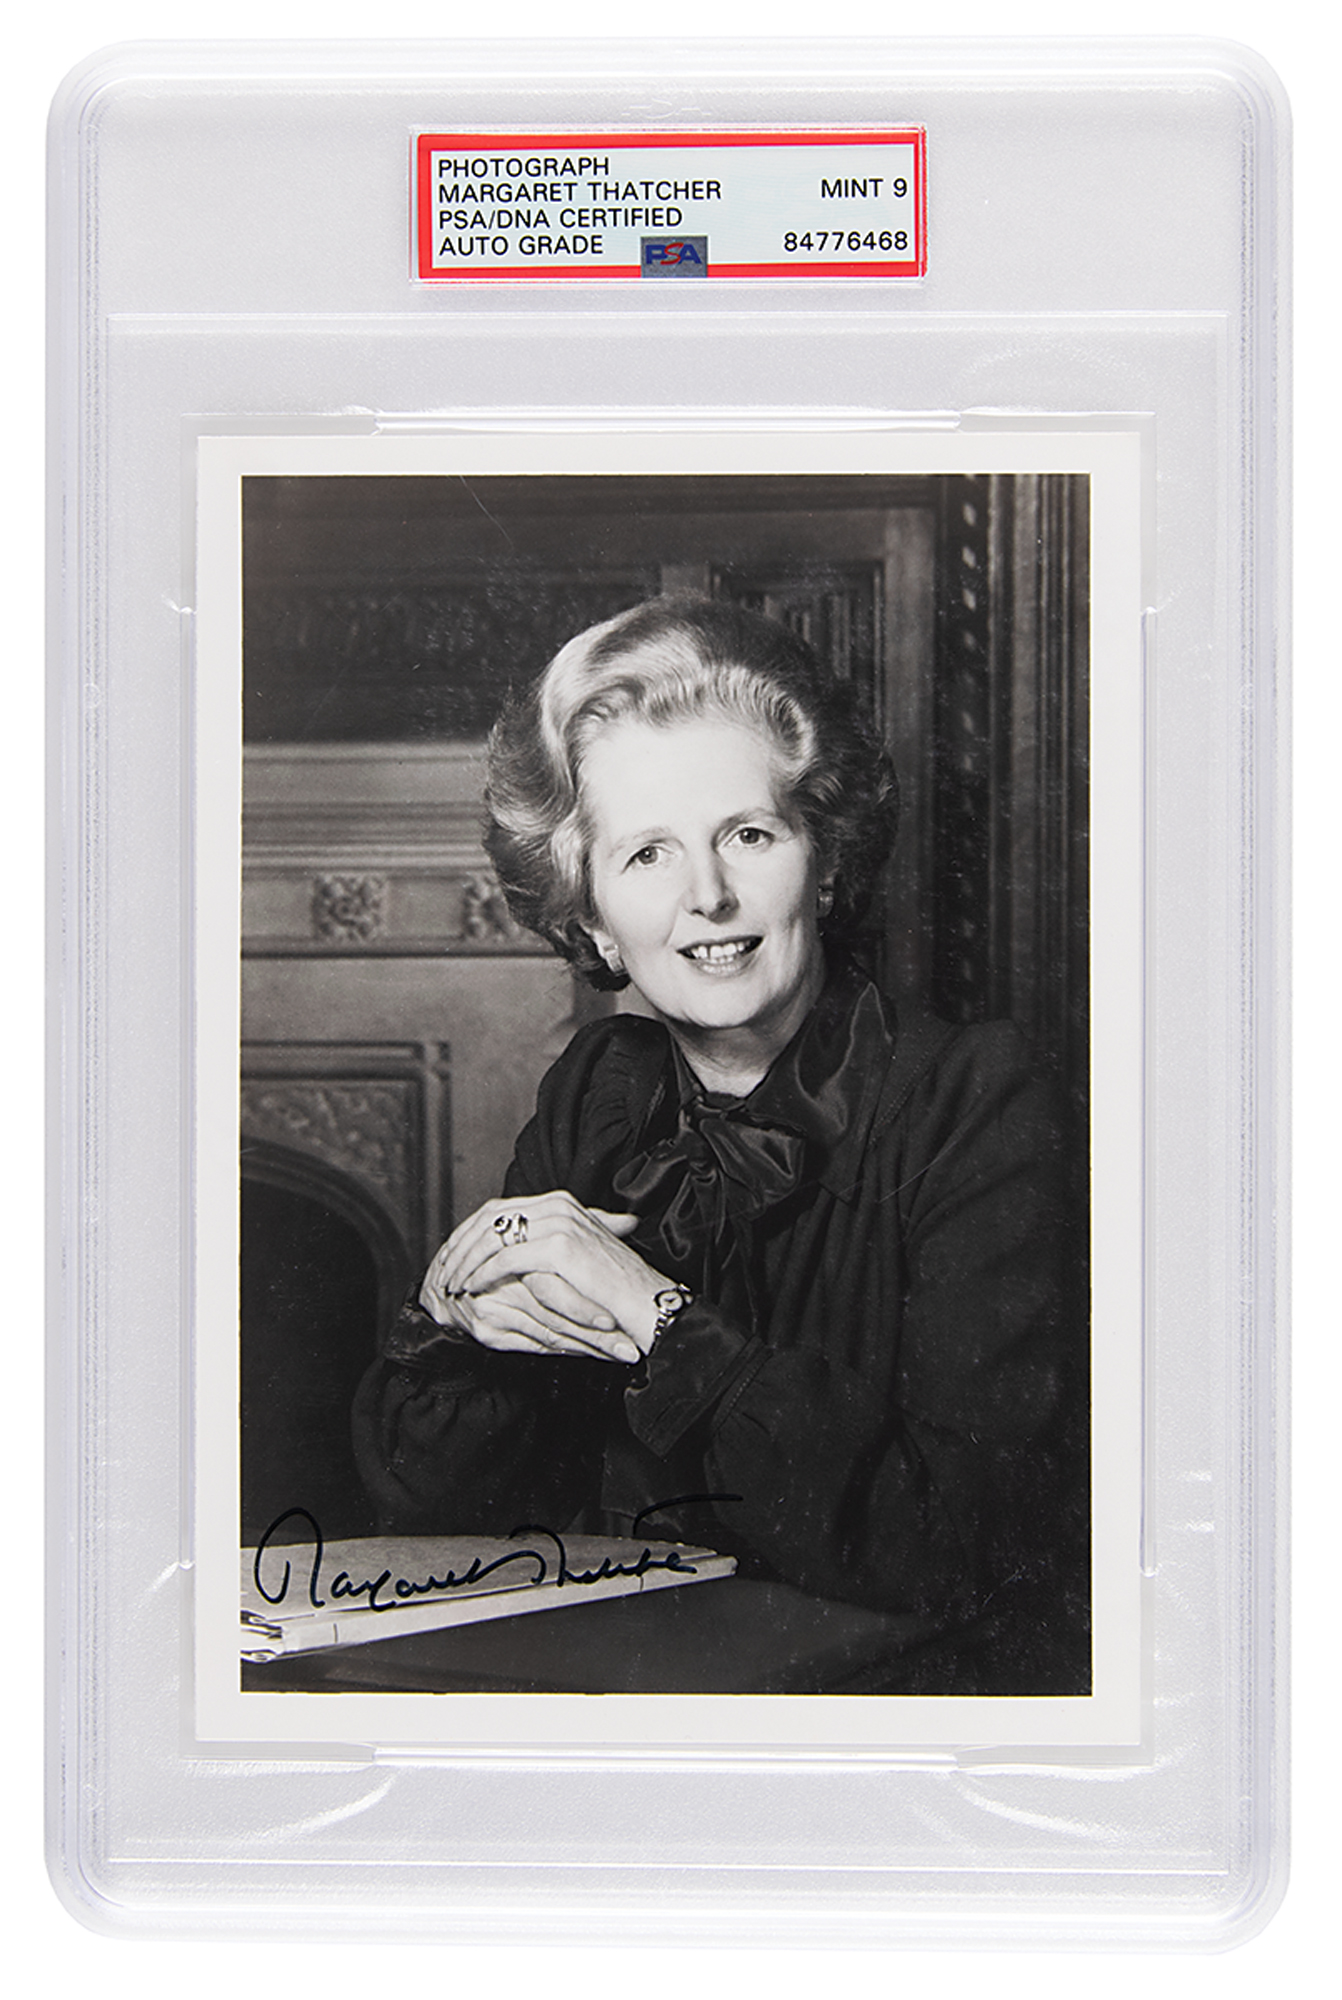 Lot #7135 Margaret Thatcher Signed Photograph - PSA MINT 9